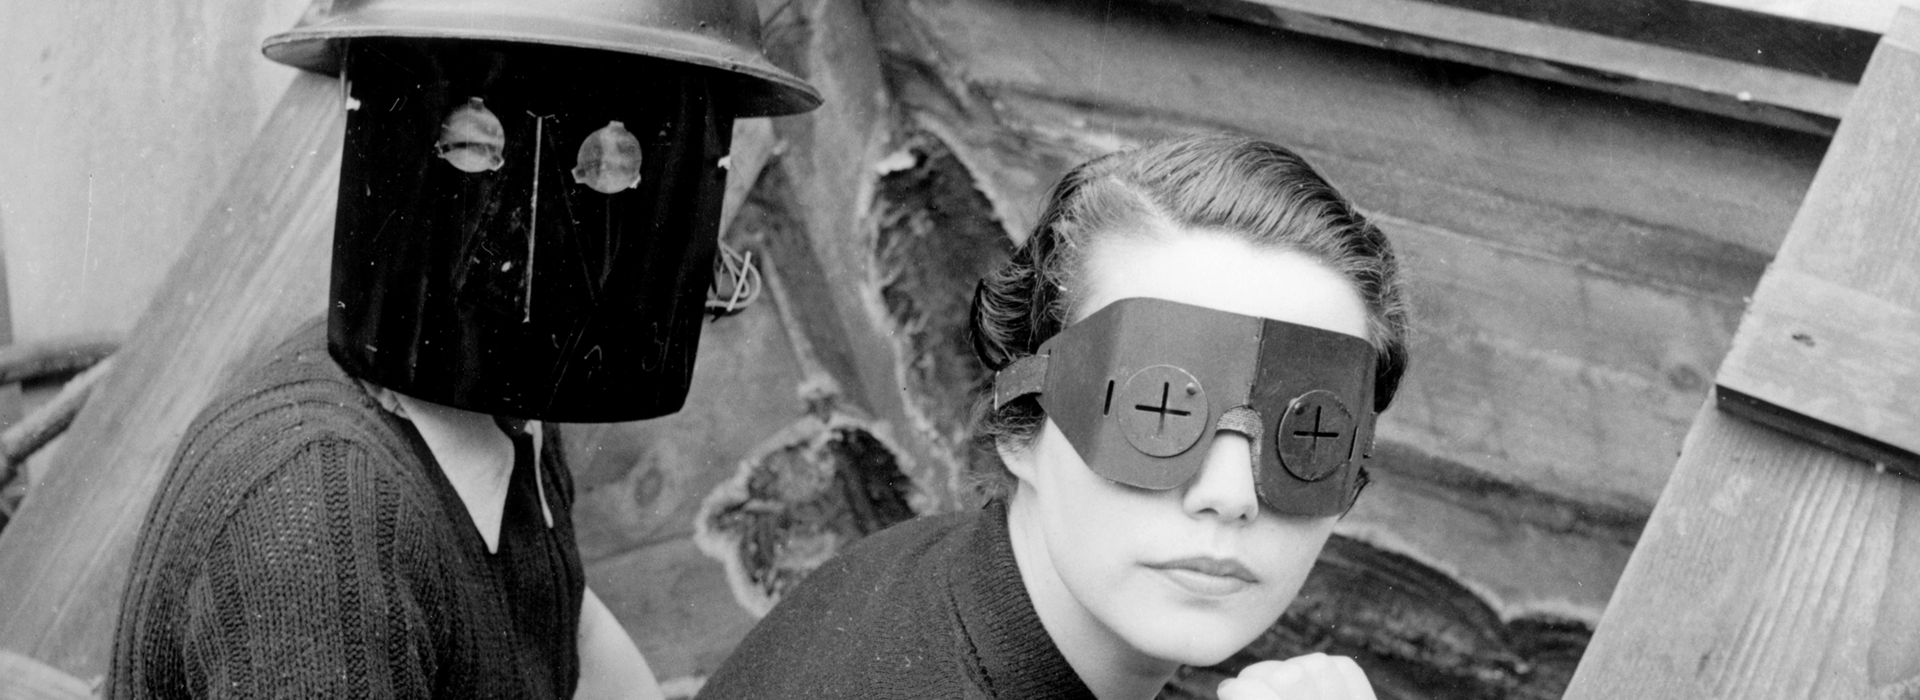 Lee Miller: Fire masks, London, 1941